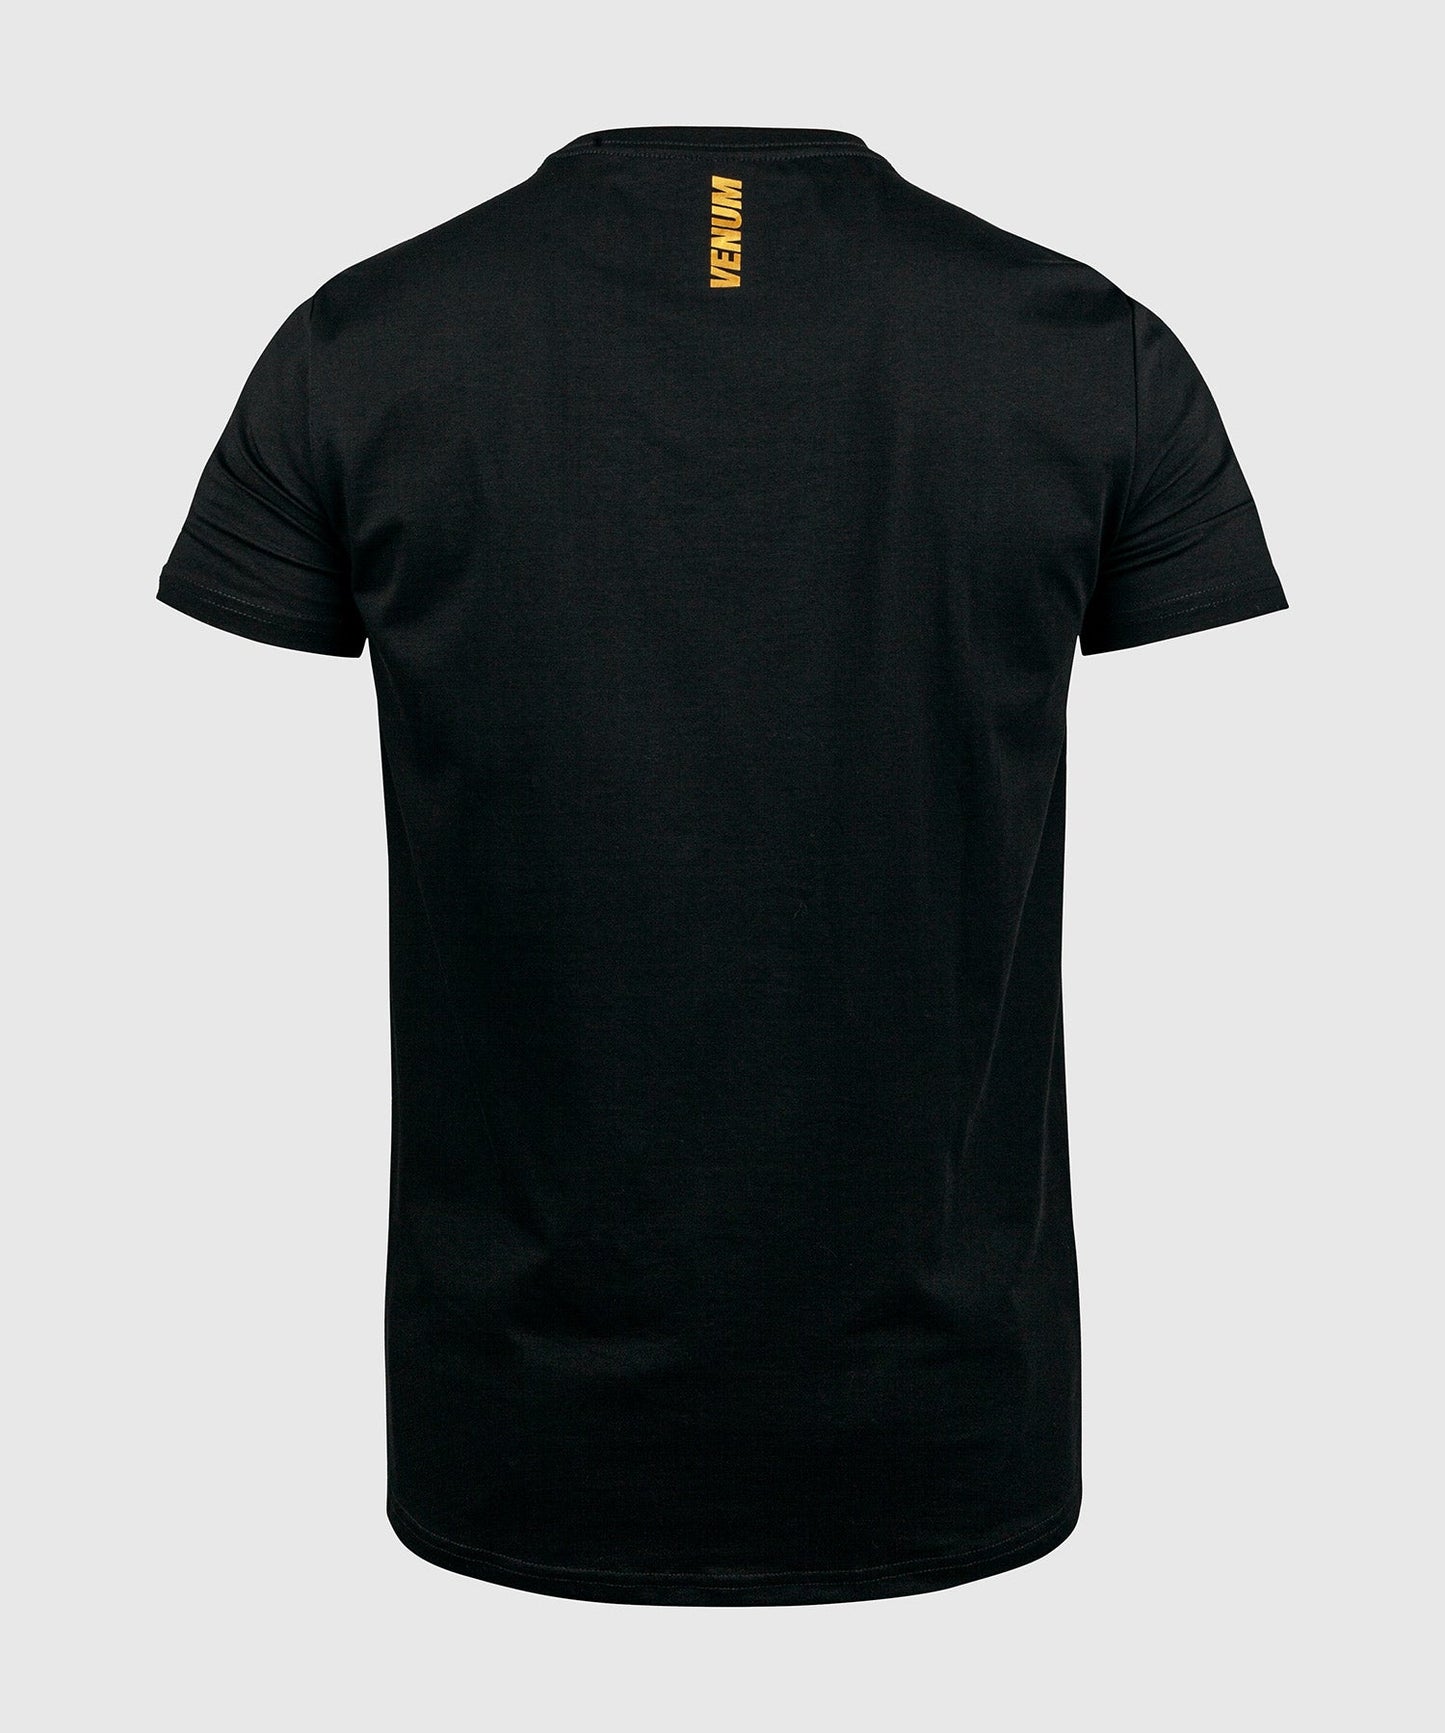 Venum MMA VT T-shirt - Black/Gold